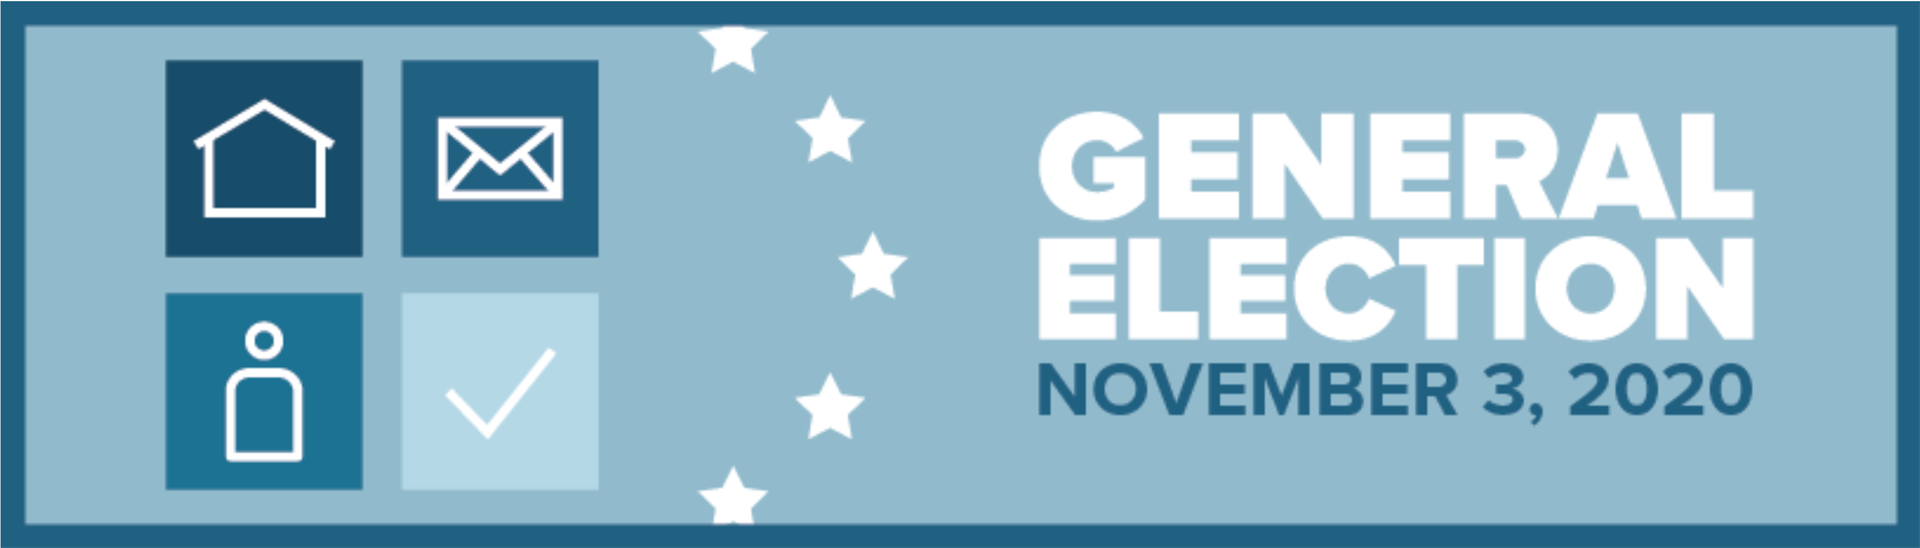 General Election, November 3, 2020